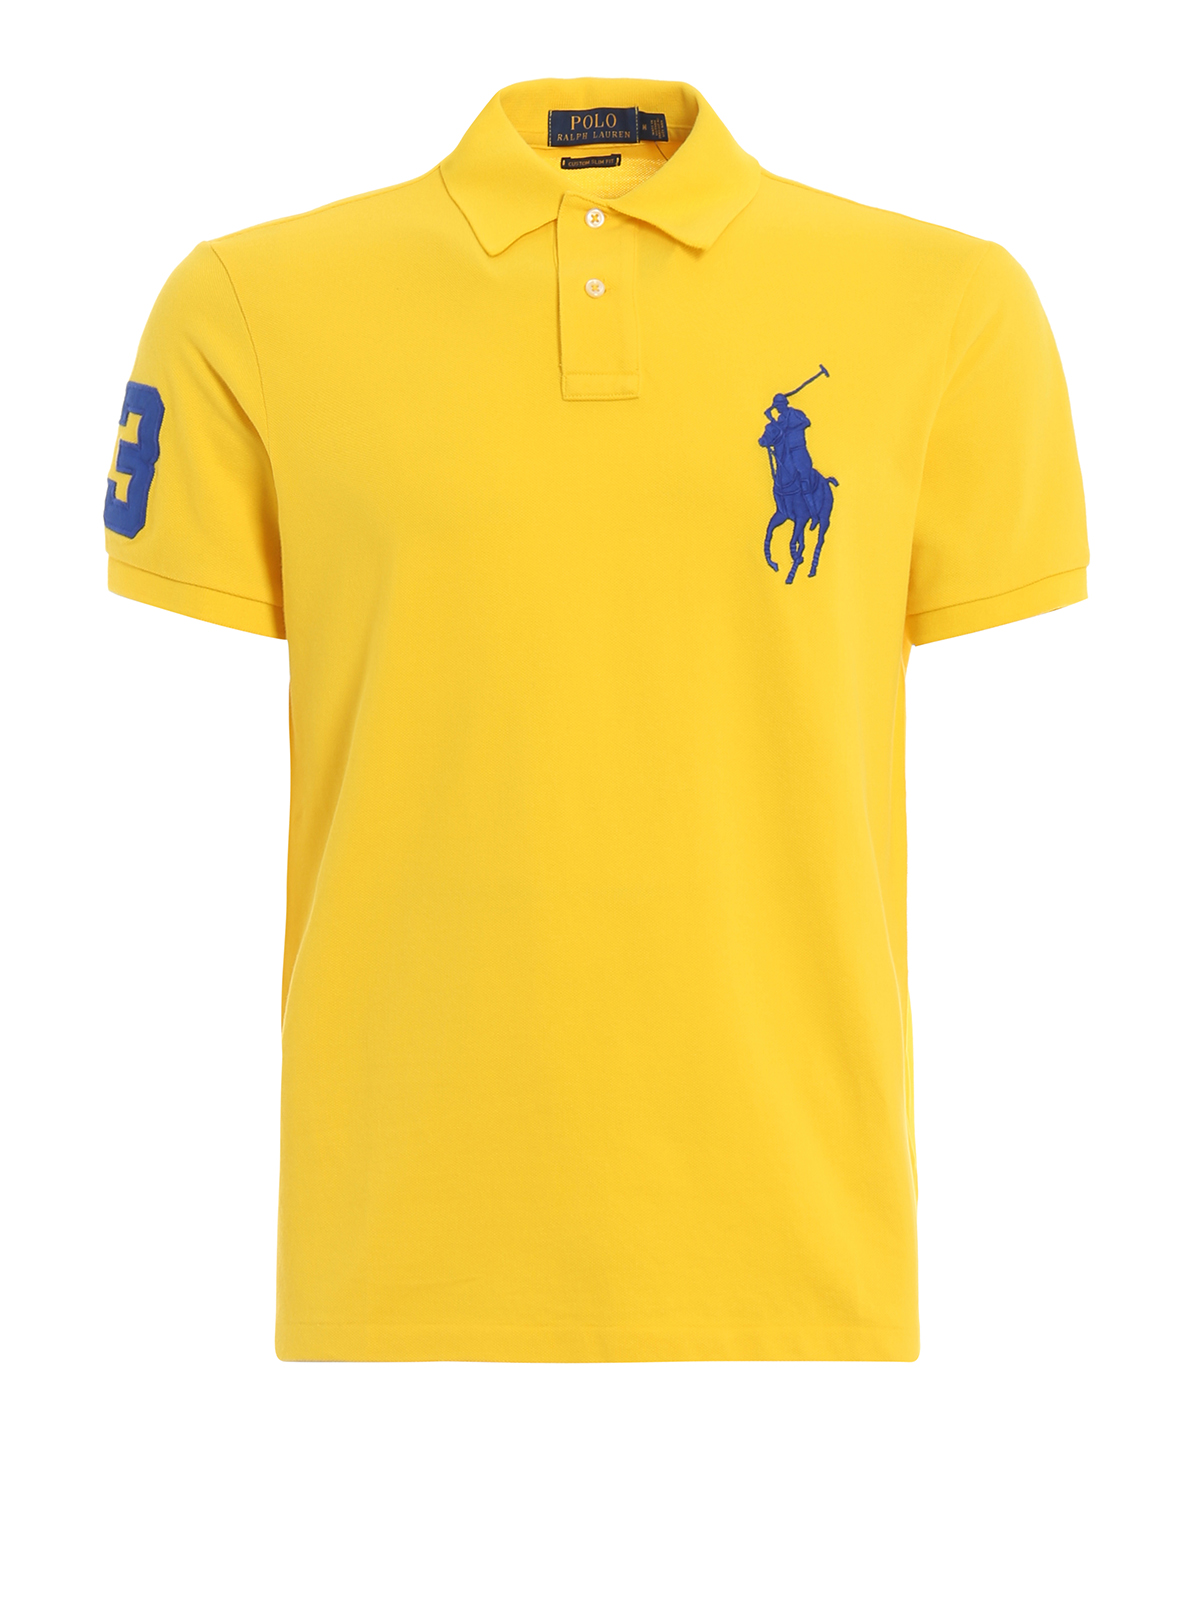 Polo Ralph Lauren - Yellow maxi logo 